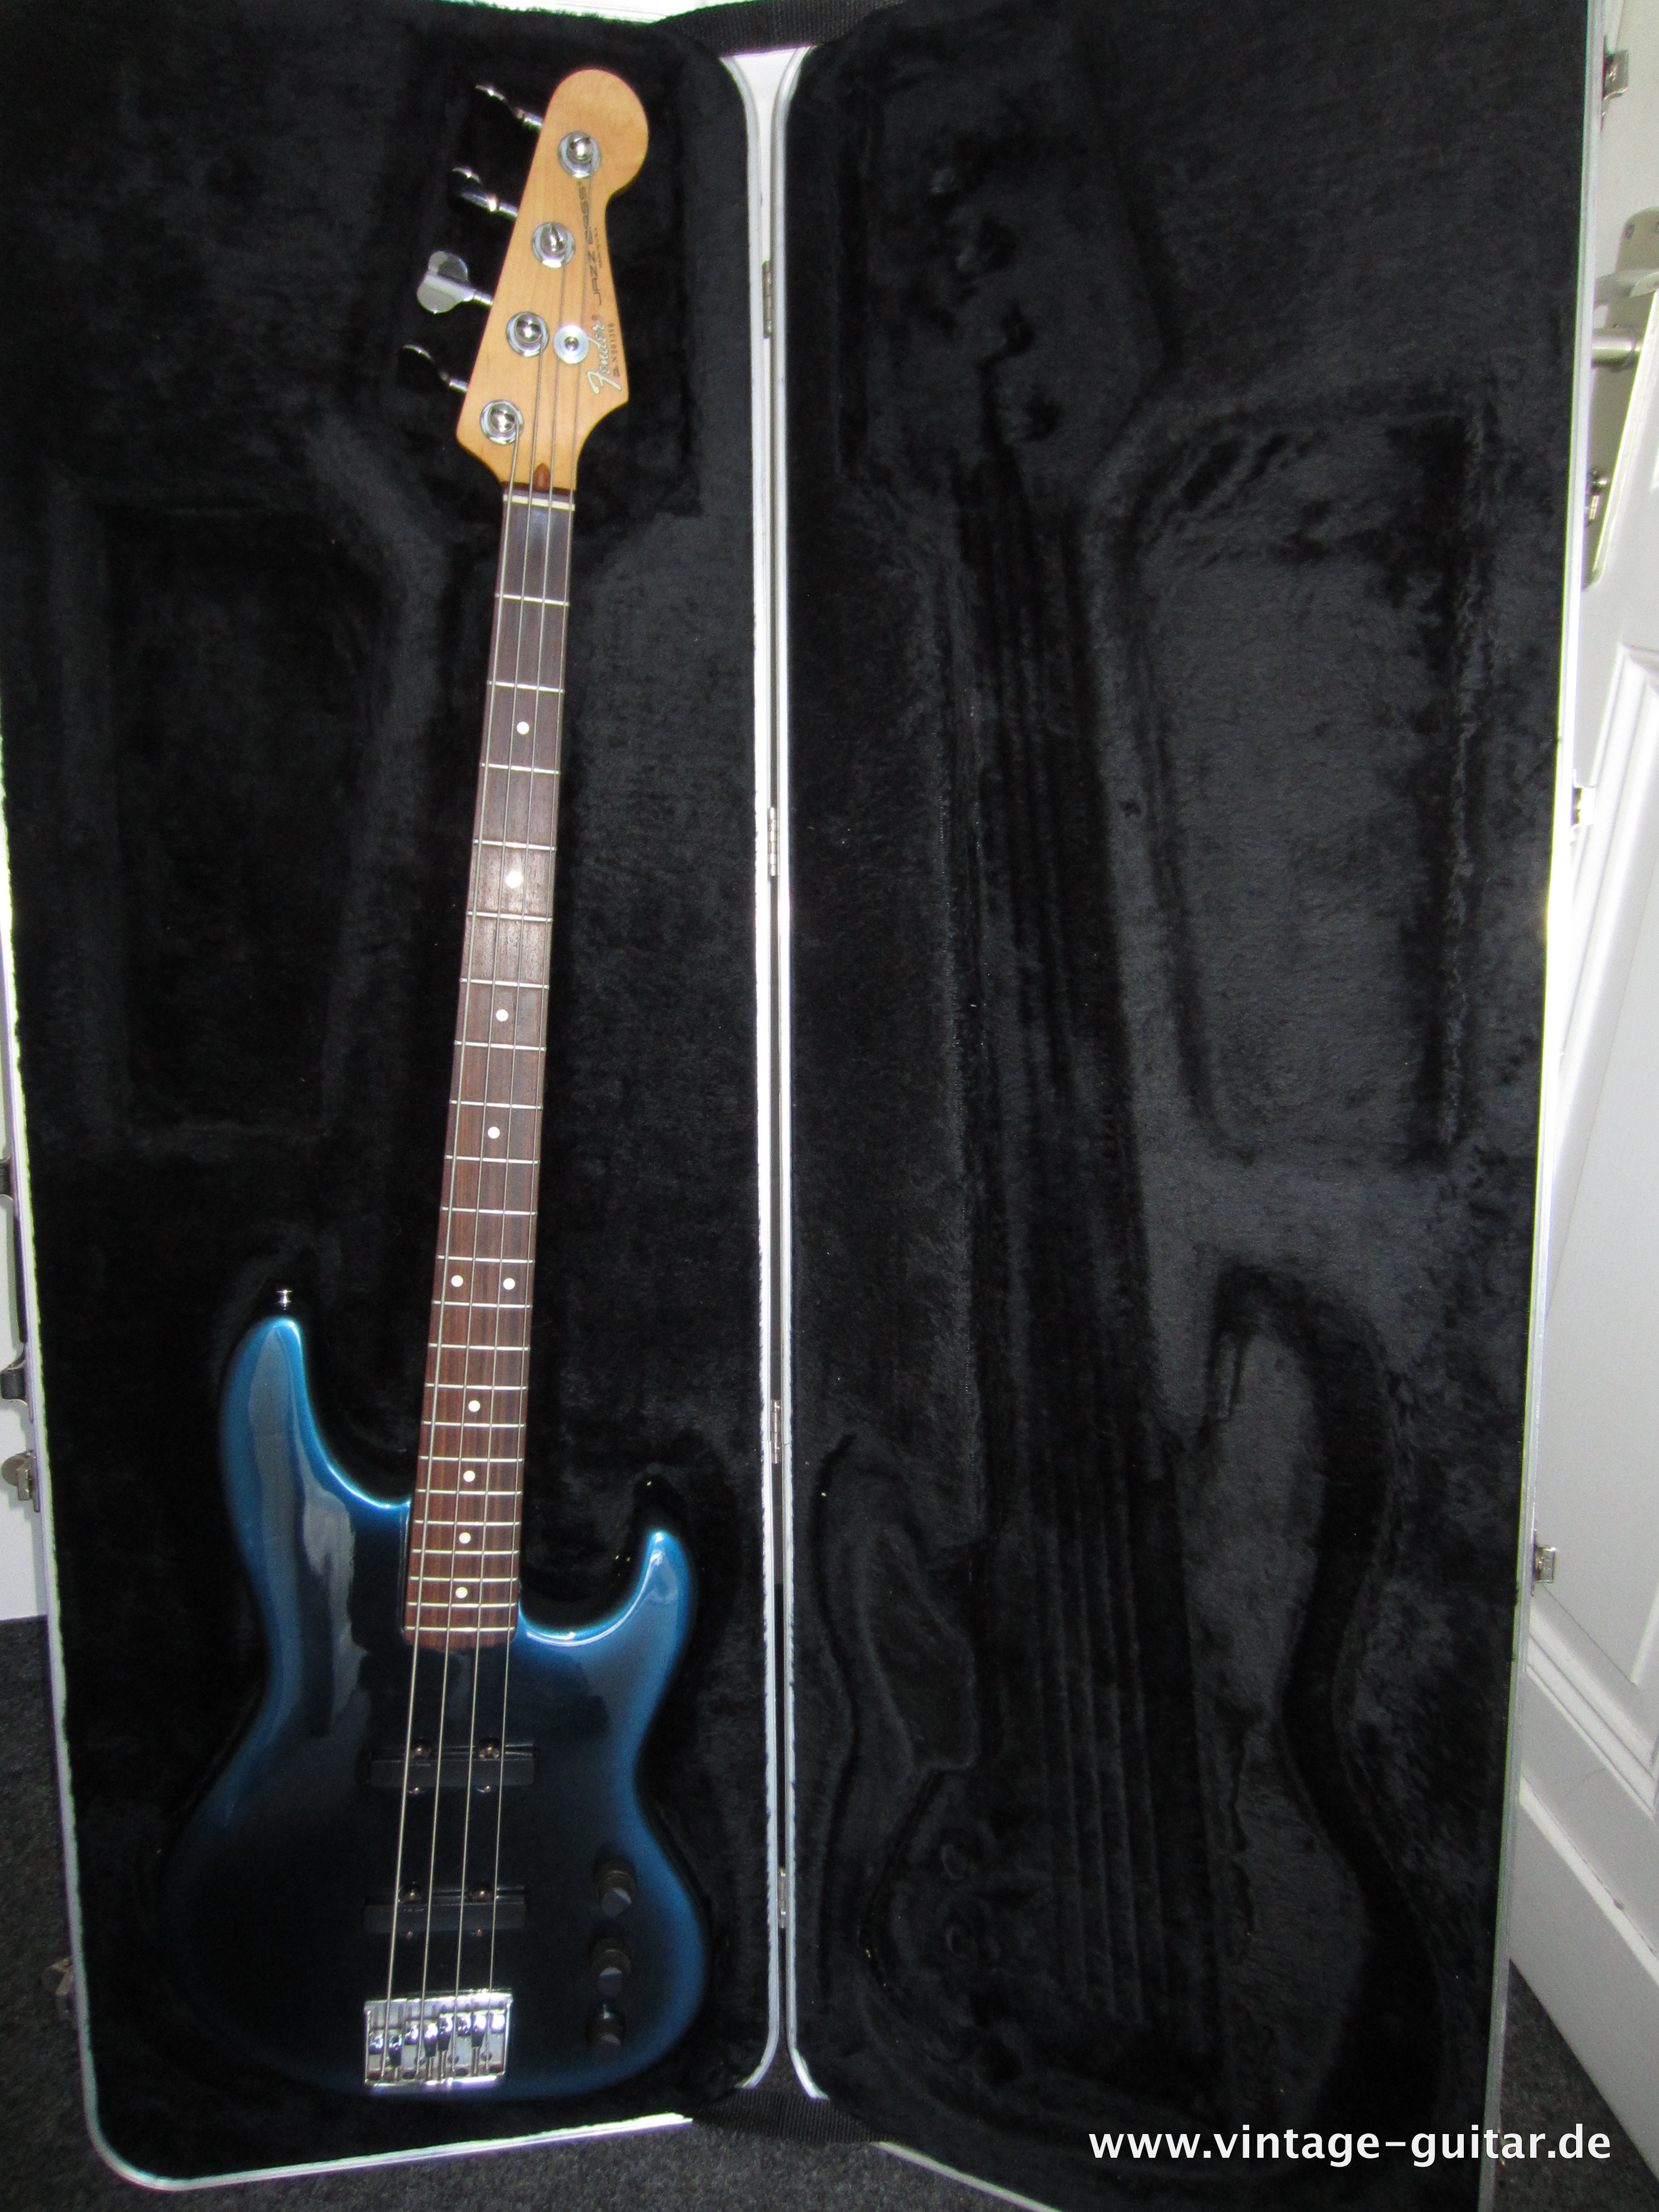 Fender-Jazz-Bass-Special-1990-blue-burst-002.jpg